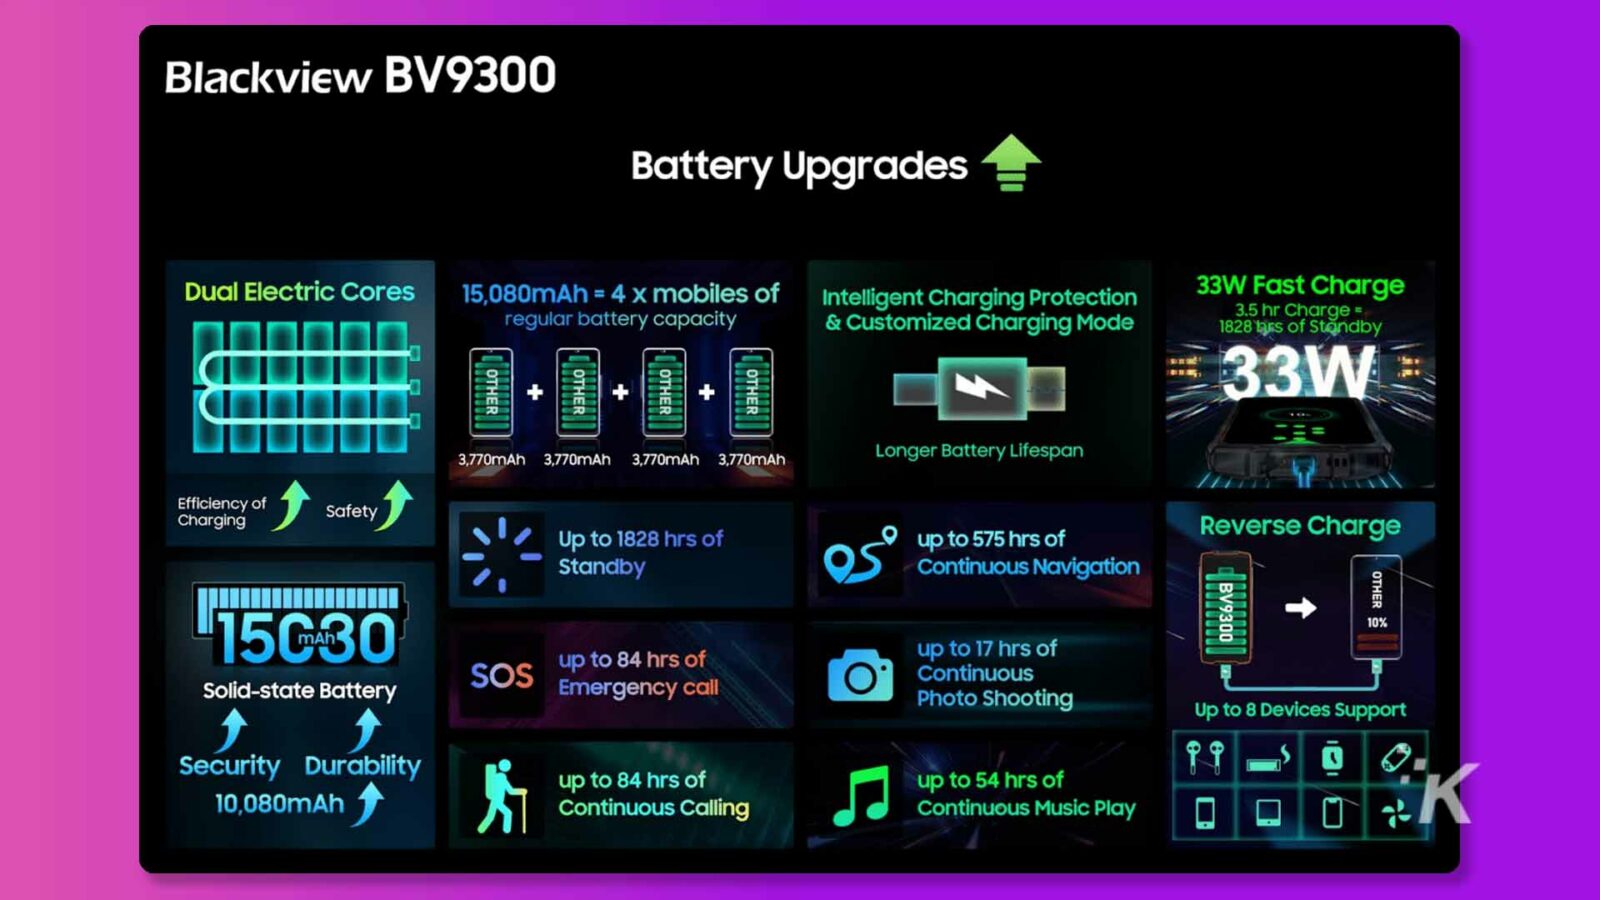 此图显示了 Blackview BV9300 电池的特性和优势，该电池具有 15,080mAh 容量和 33W 快速充电以及定制充电模式，可提供更长的电池寿命、高效充电和长达 1828 小时的待机时间。全文： Blackview BV9300 电池升级 双电芯 15,080mAh = 4 x 智能充电保护手机 33W 快速充电常规电池容量和自定义充电模式 3.5 小时充电 = 1828 tirs 待机 33W OTHER OTHER OTHER + + + MA 3,770mAh 3,770 mAh 3,770mAh 3,770mAh 更长的电池寿命 充电安全效率 长达 1828 小时 反向充电长达 575 小时 待机 连续导航 OTHER BV9300 15G30 长达 84 小时的固态电池 SOS 长达 17 小时的紧急呼叫 O 连续照片Shooting Up to 8 Devices Support Security Durability 10,080mAh up to 84 hrs of up to 54 hrs of Continuous Calling 连续音乐播放